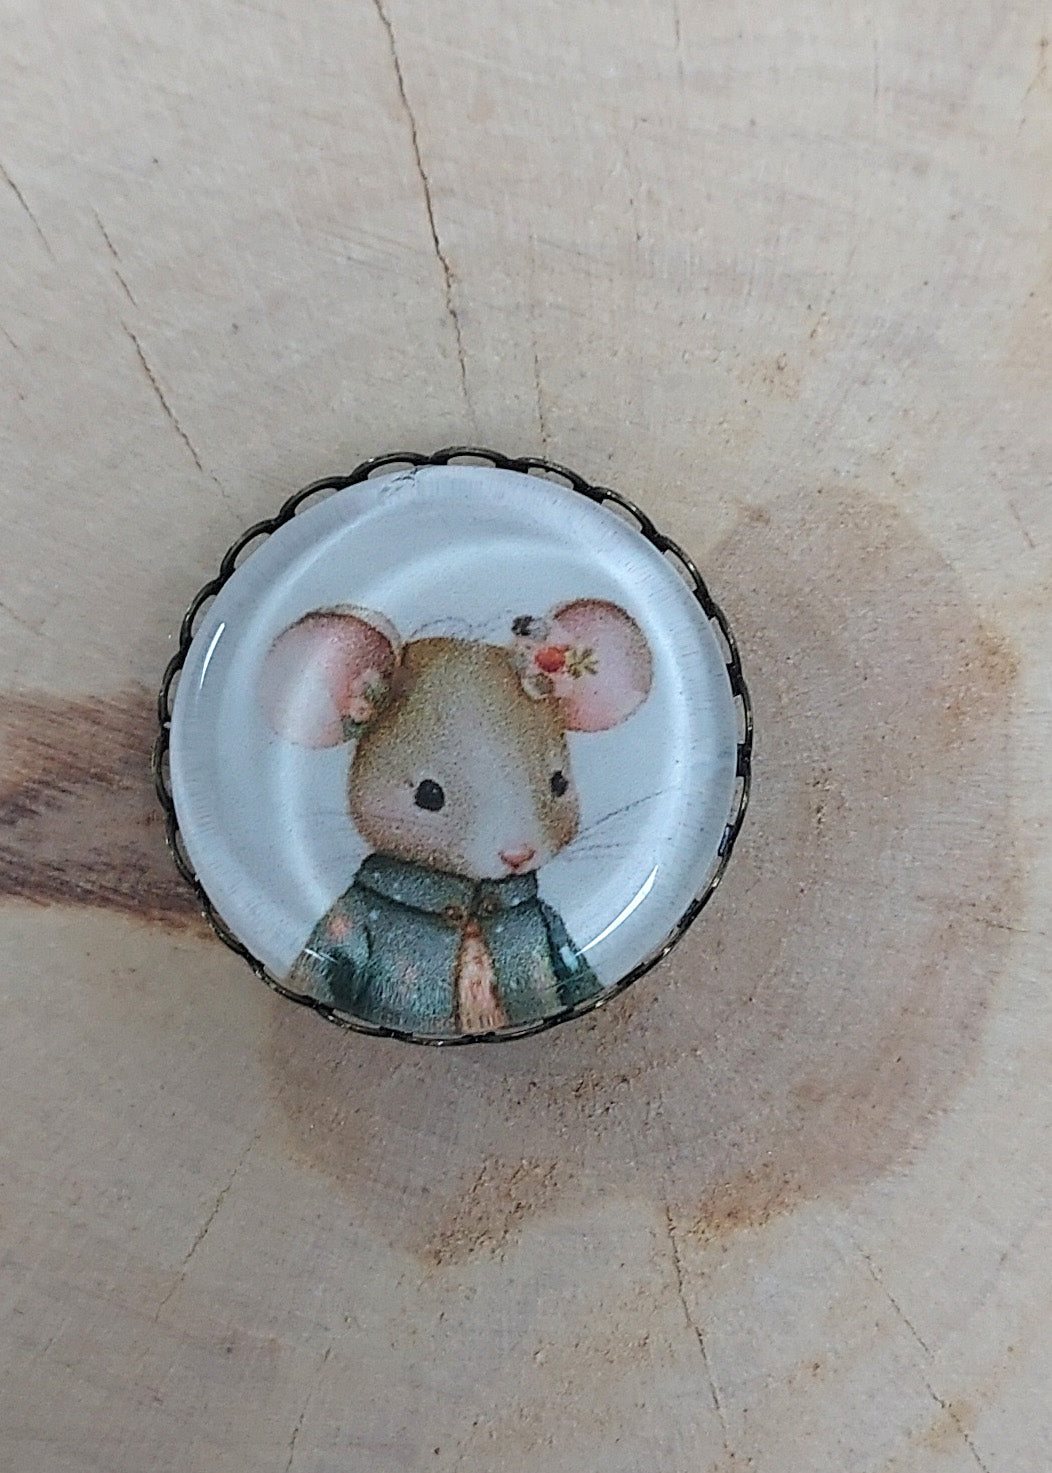 Embroiderer's magnet (or Magnet) Baby Colette